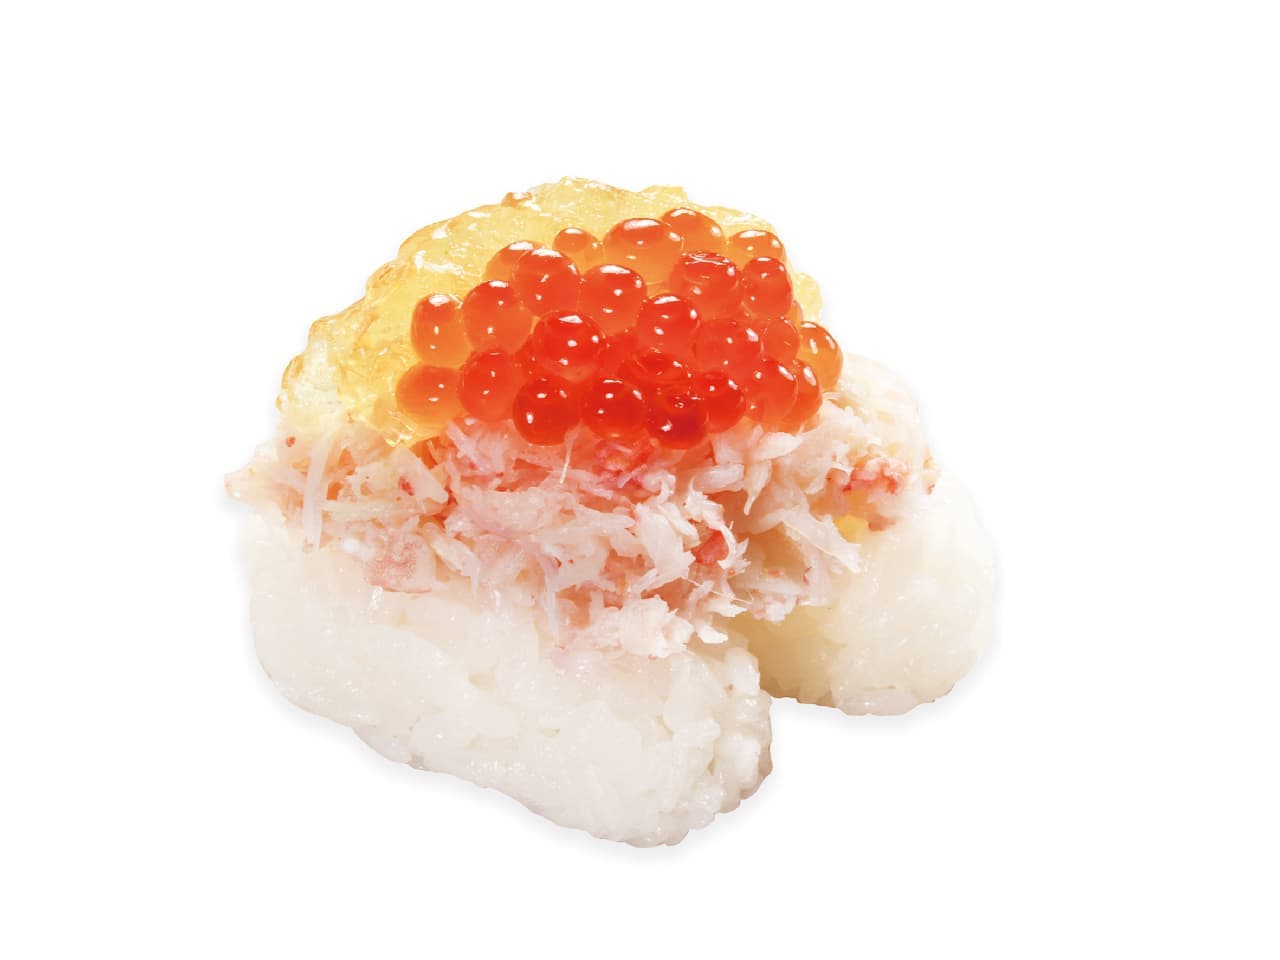 Kurazushi "Crab and salmon roe consommé jus